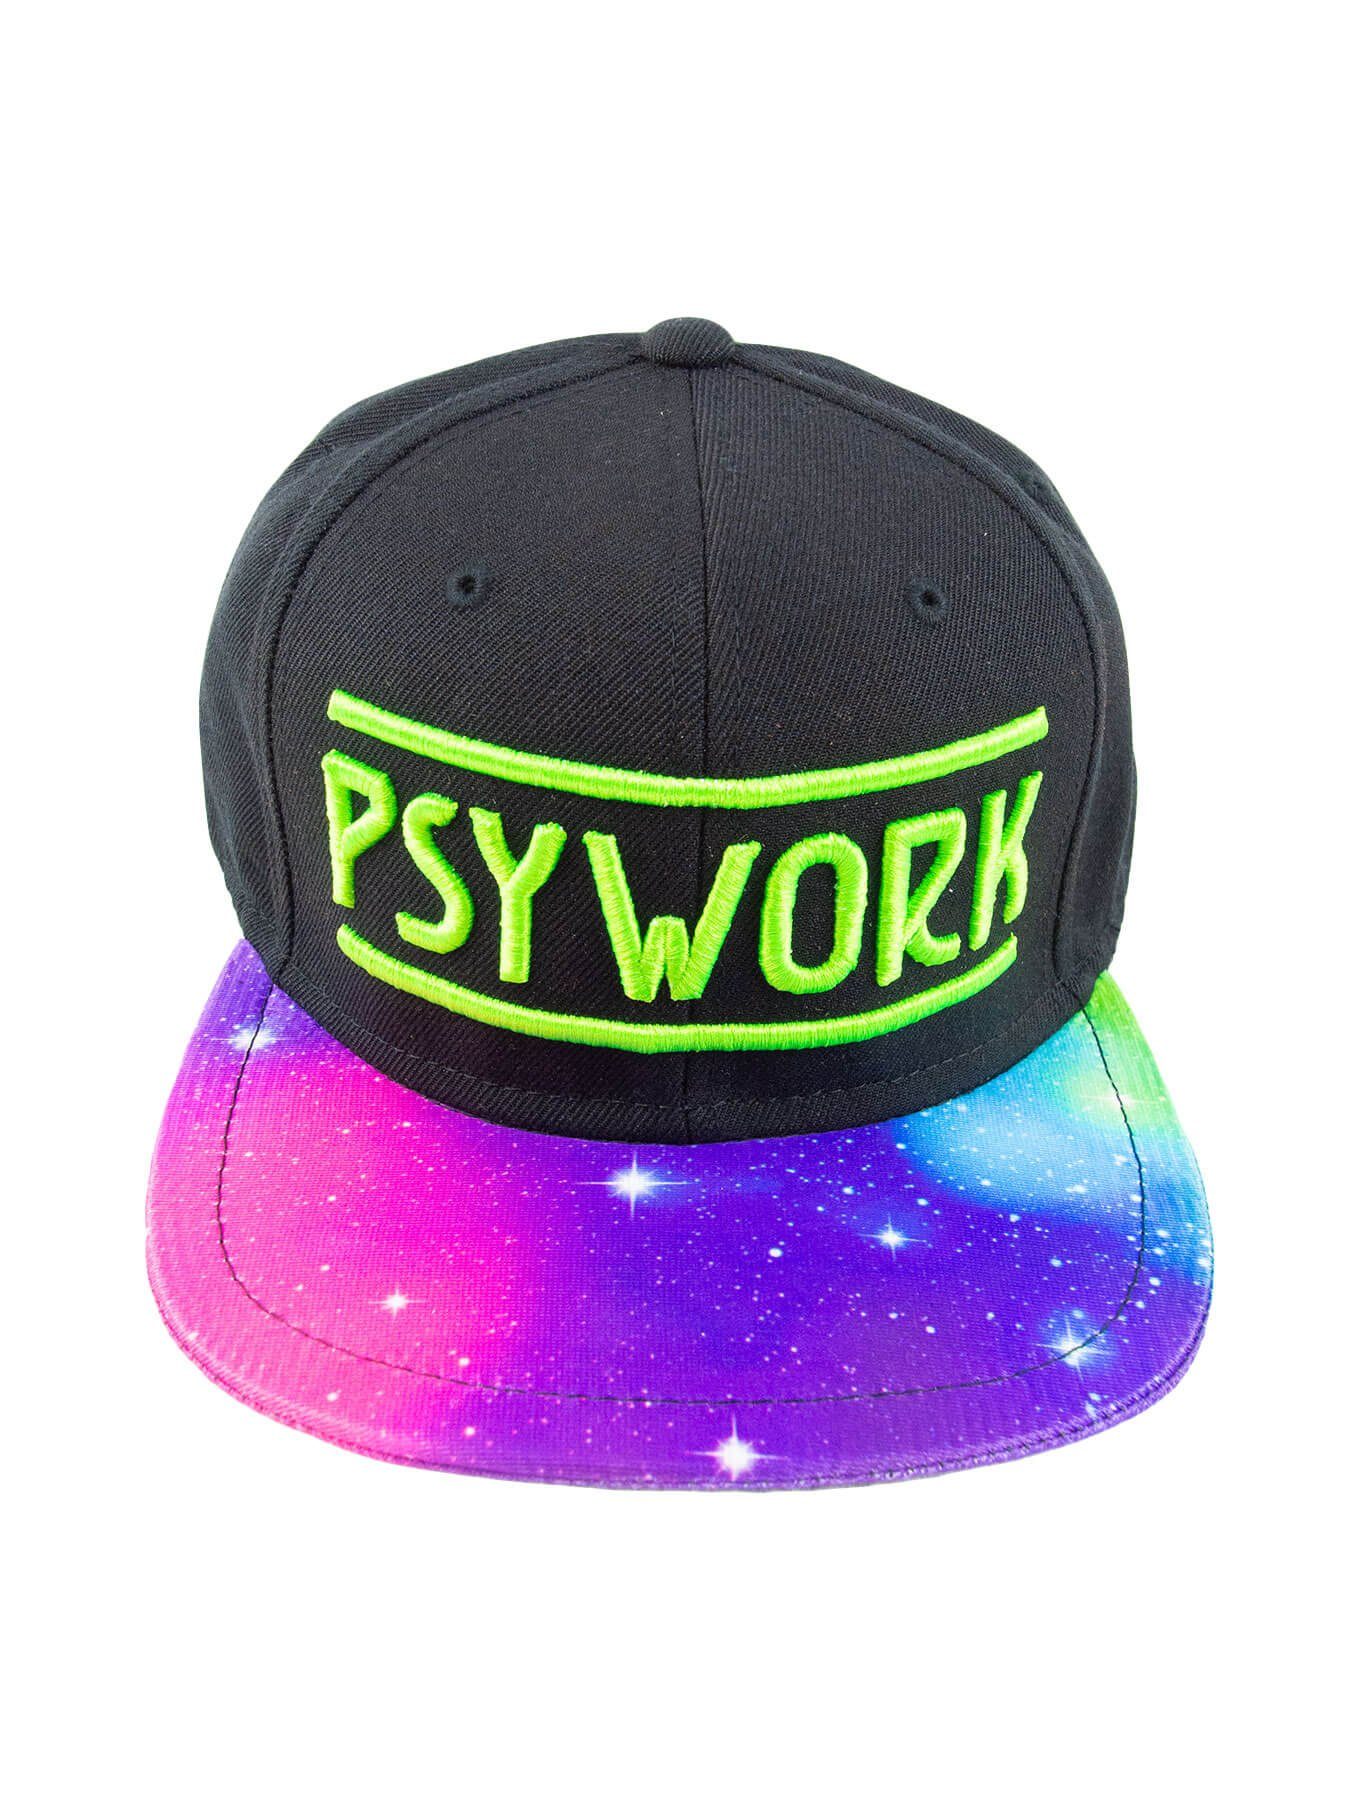 PSYWORK Snapback Cap Schwarzlicht Black Cap Neon "Psychedelic Universe", Grün UV-aktiv, leuchtet unter Schwarzlicht | Snapback Caps